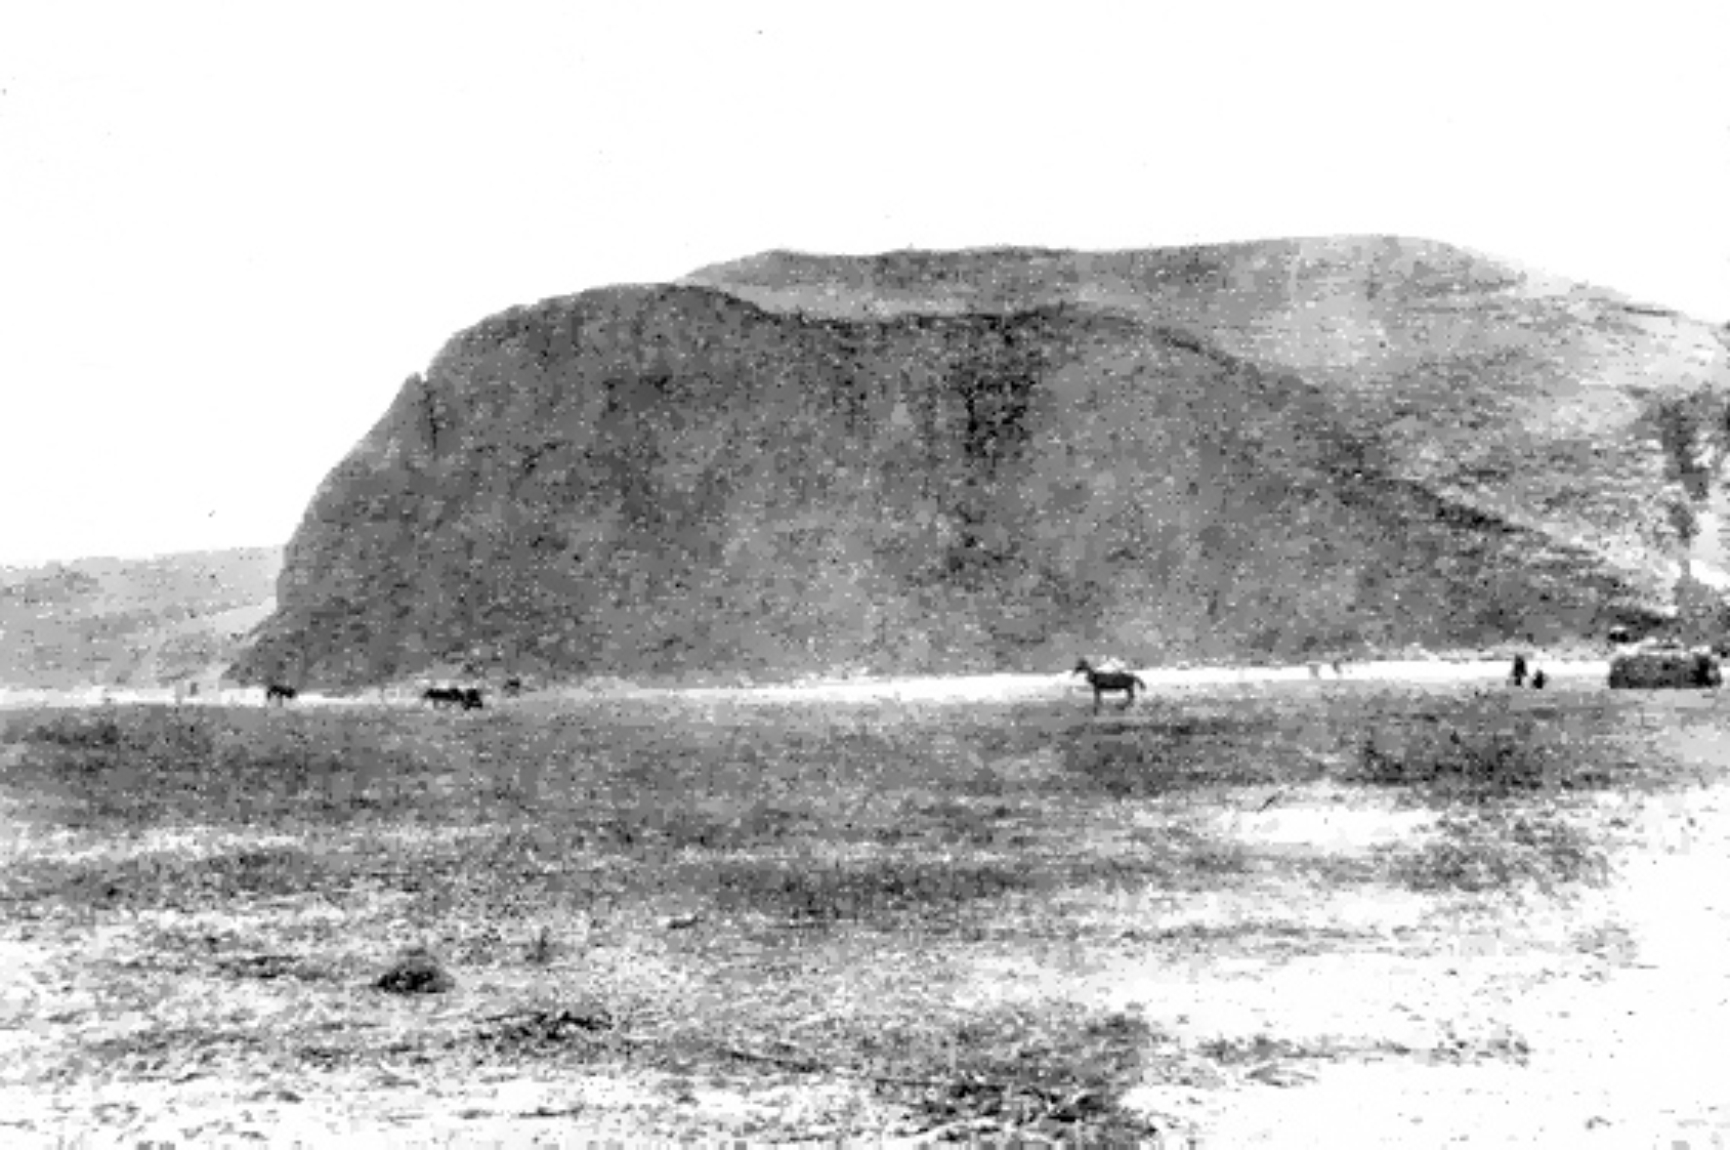 Sultana tell settlement, 1923